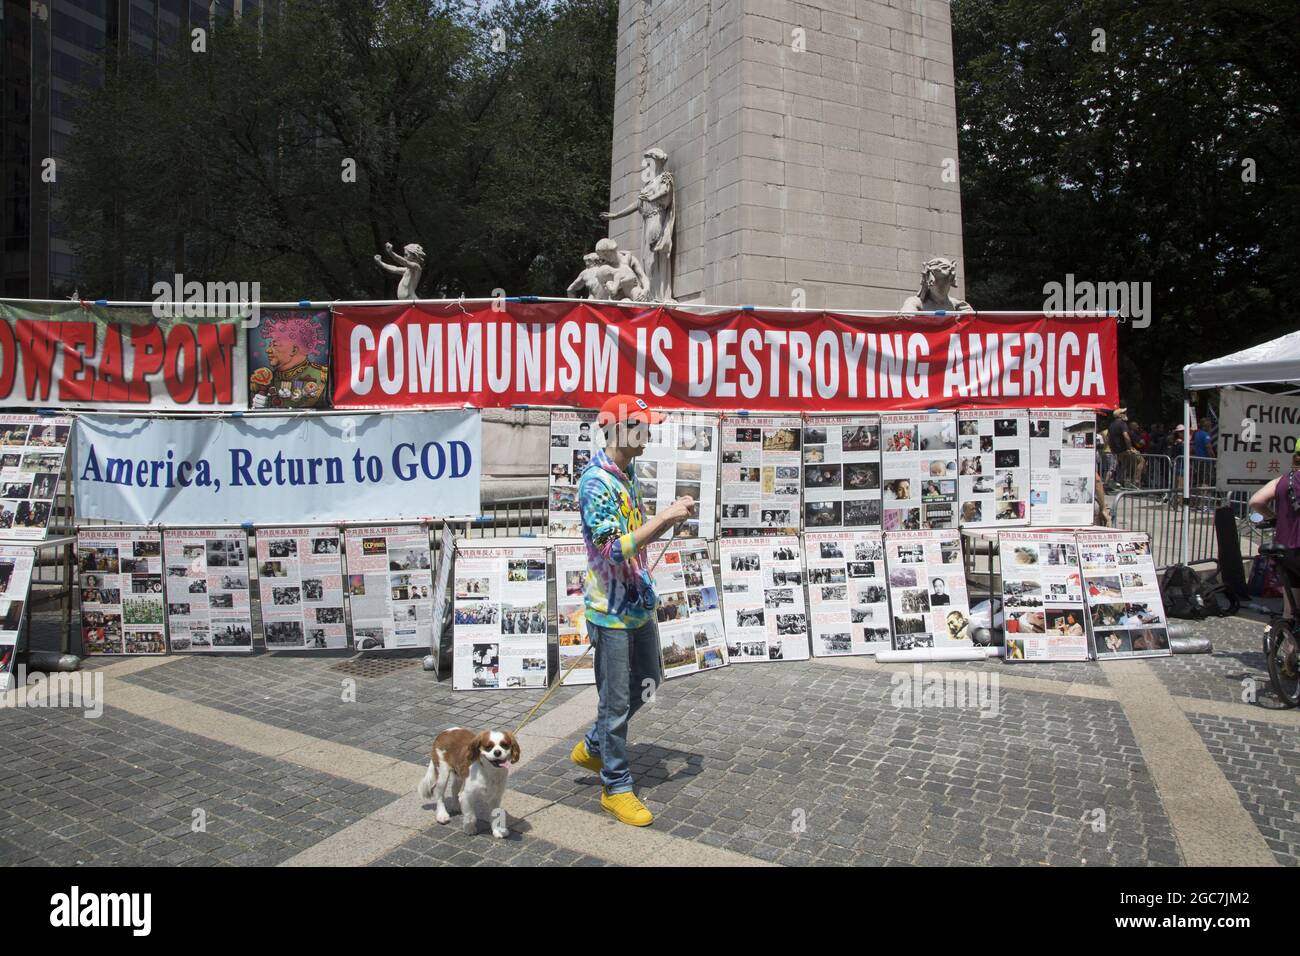 Die chinesische Gruppe ermutigt die Amerikaner, zu Gott zurückzukehren und nicht zu lassen, dass der Kommunismus Amerika zerstört. Gezeigt wird, was die KPCh (Kommunistische Partei Chinas) vielen Bürgern angetan hat. Installation, Columbus Circle im Central Park, New York City. Stockfoto